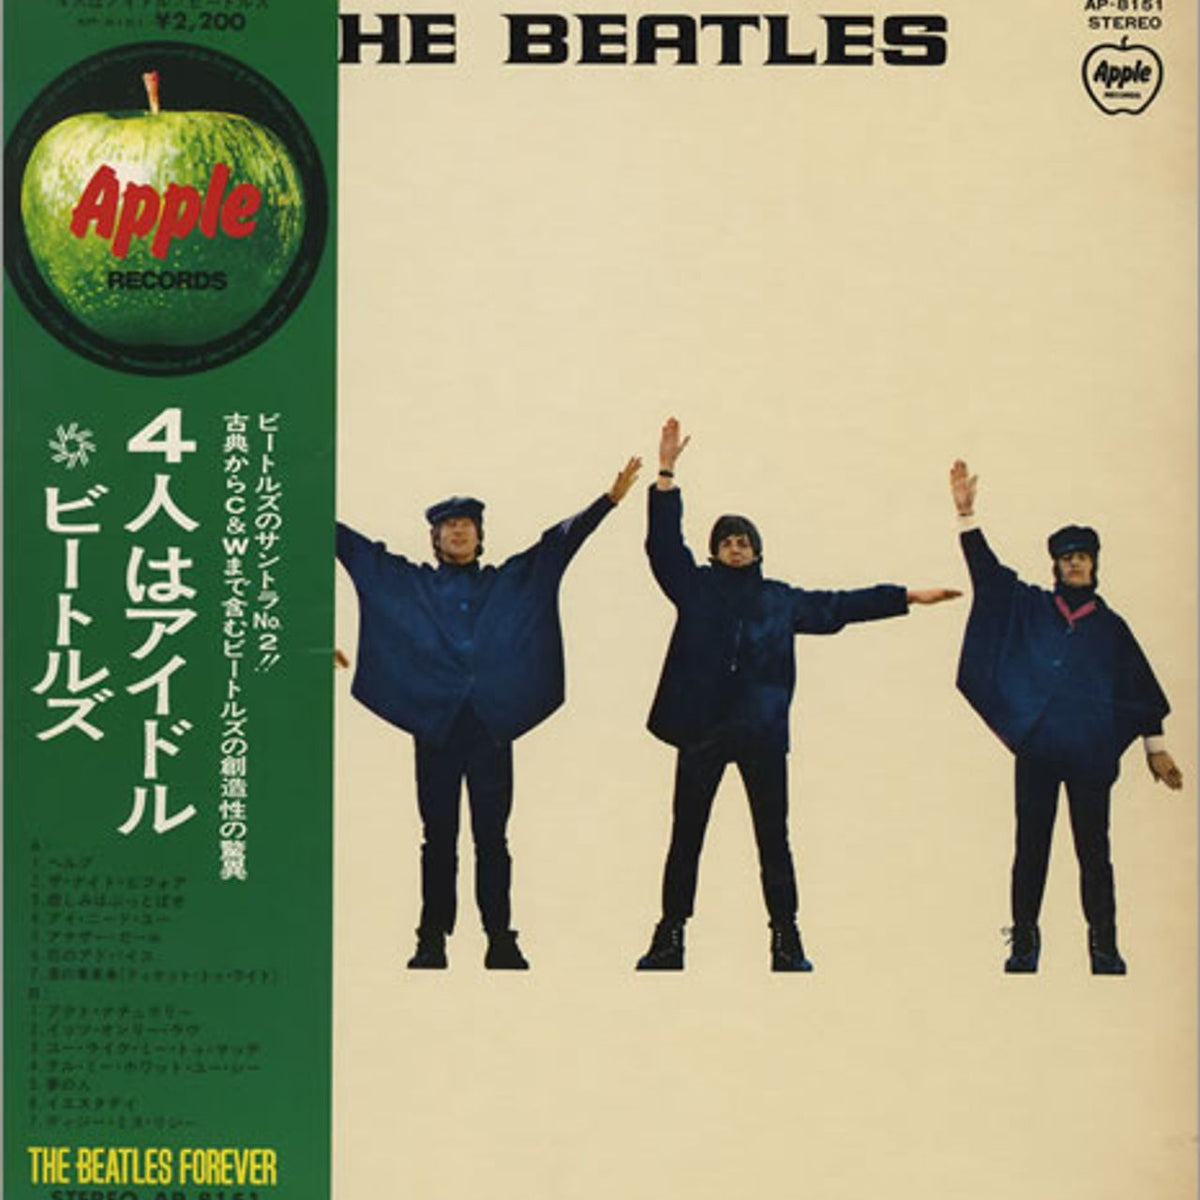 The Beatles Help! - Rare Vinyl Records at RareVinyl.com